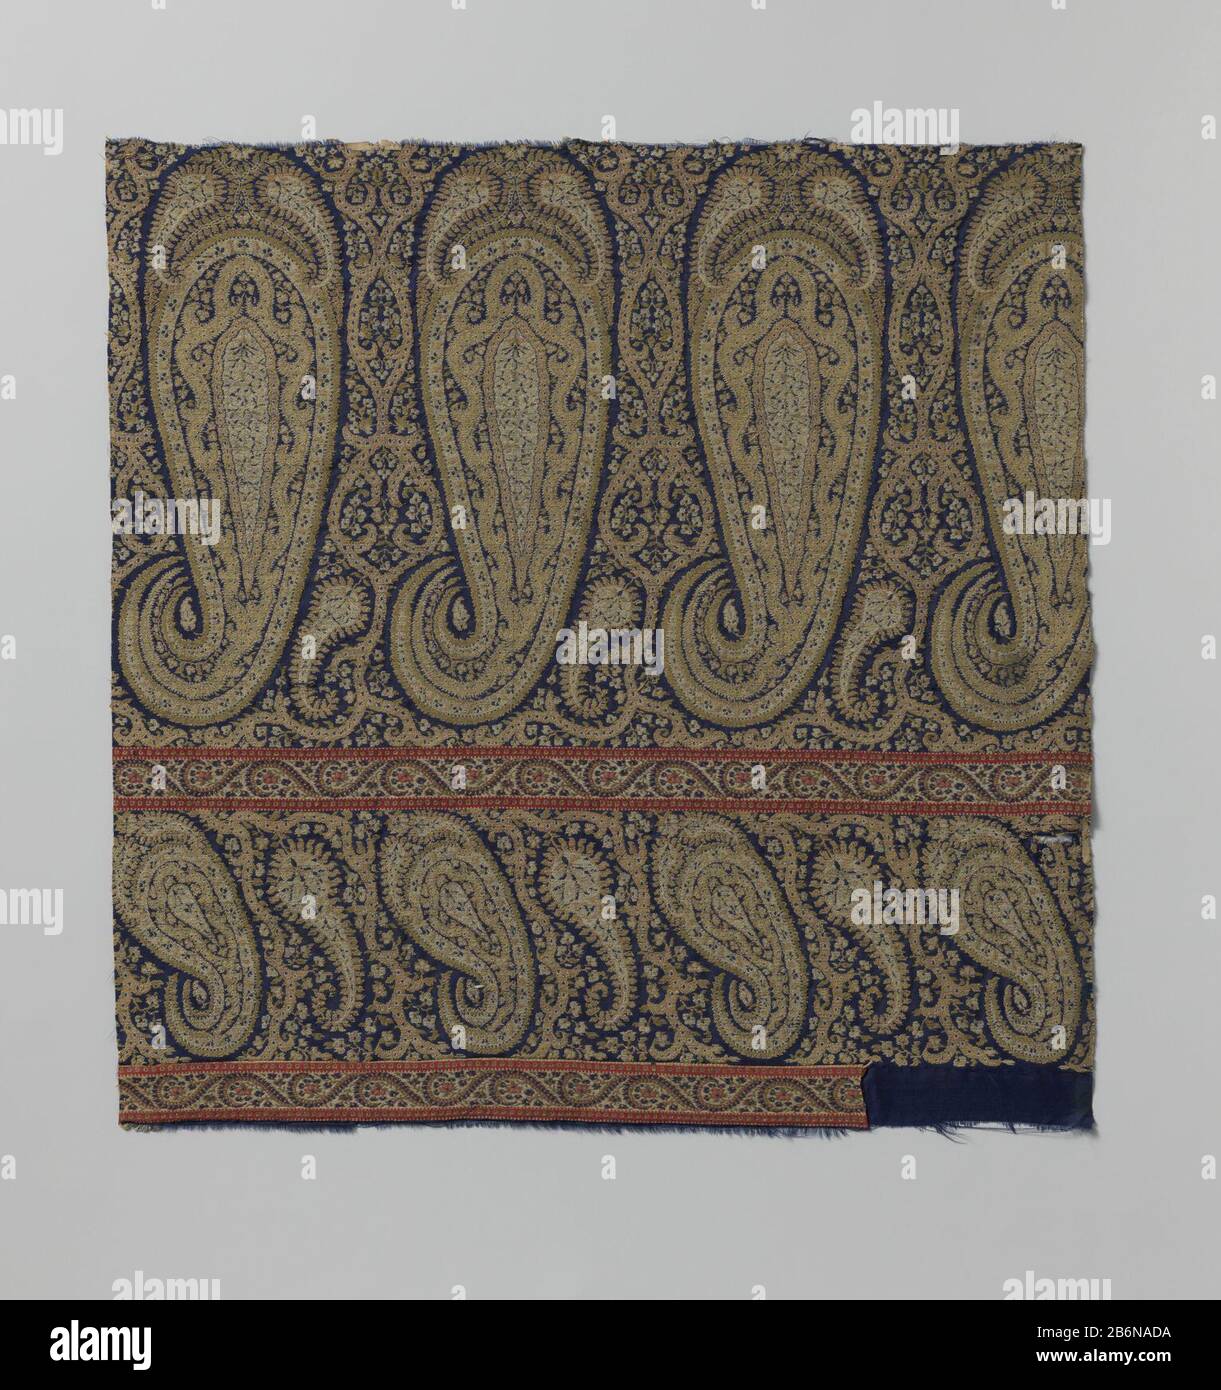 Fragment van wol van een kasjmier sjaal met patroon van palmvormen op blauw fond Fragment van wol van een kasjmier sjaal met op een blauw fond een patroon in wit, geel, roze en rood van horizontaal gerijde palmen Stock Photo